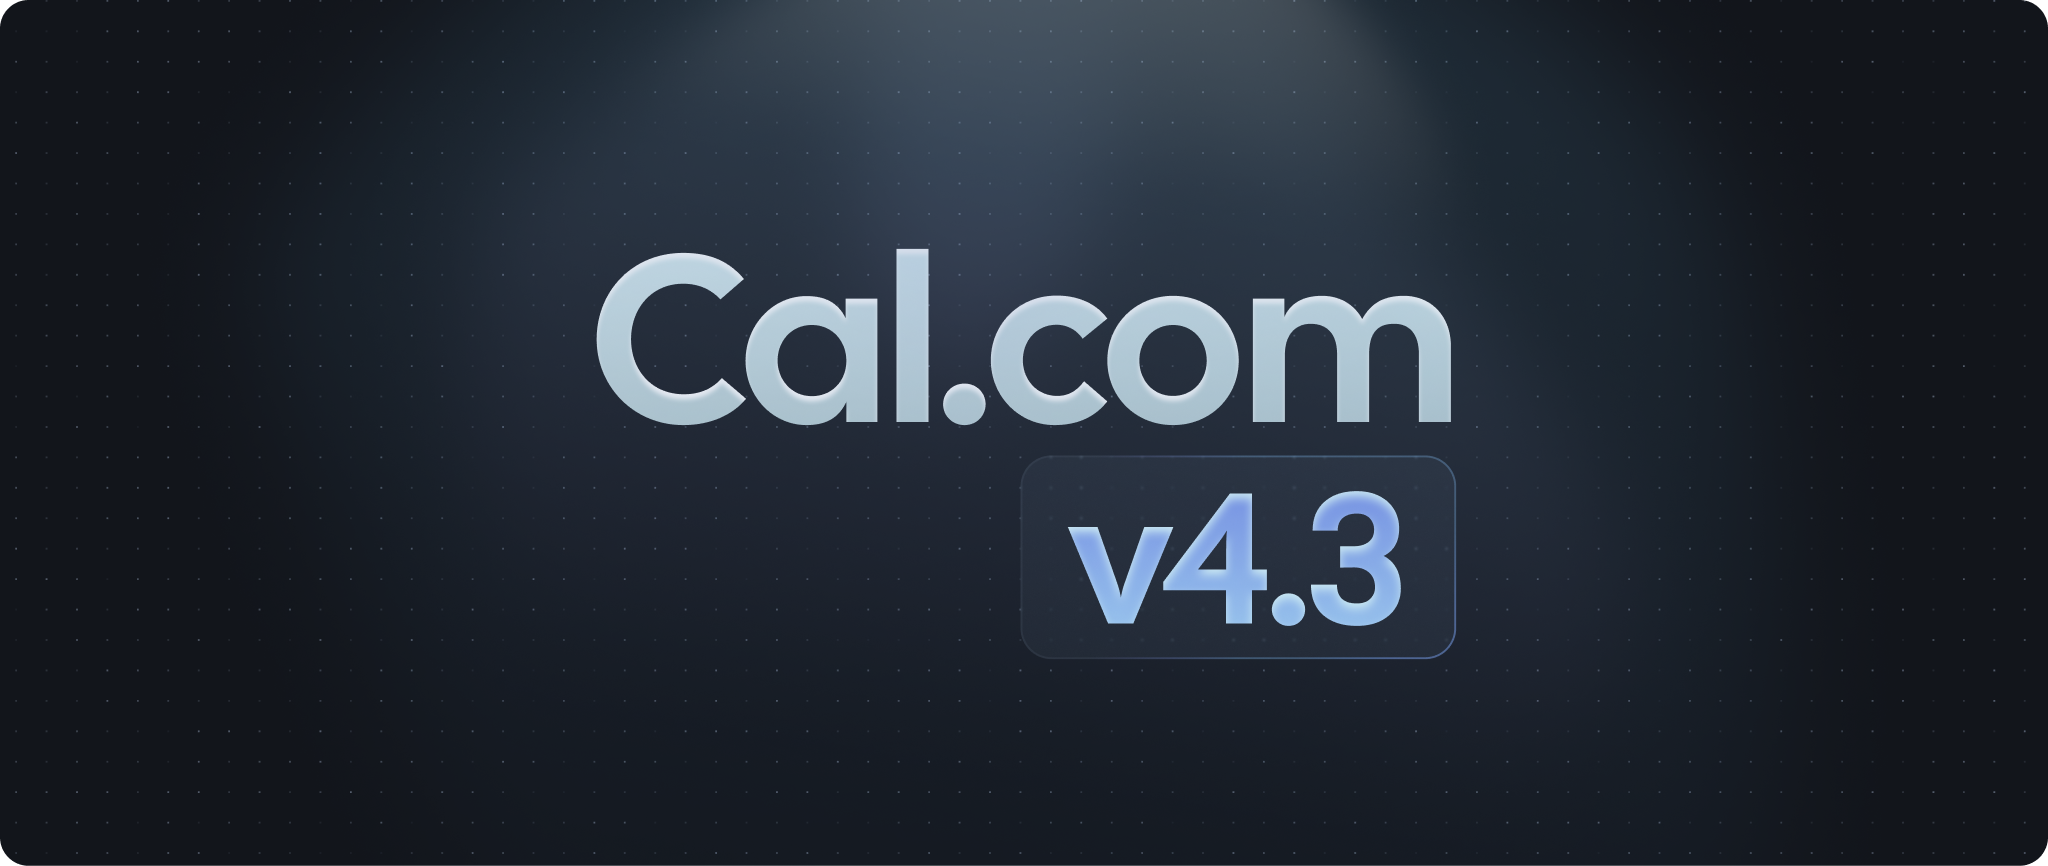 Cal.com v4.3